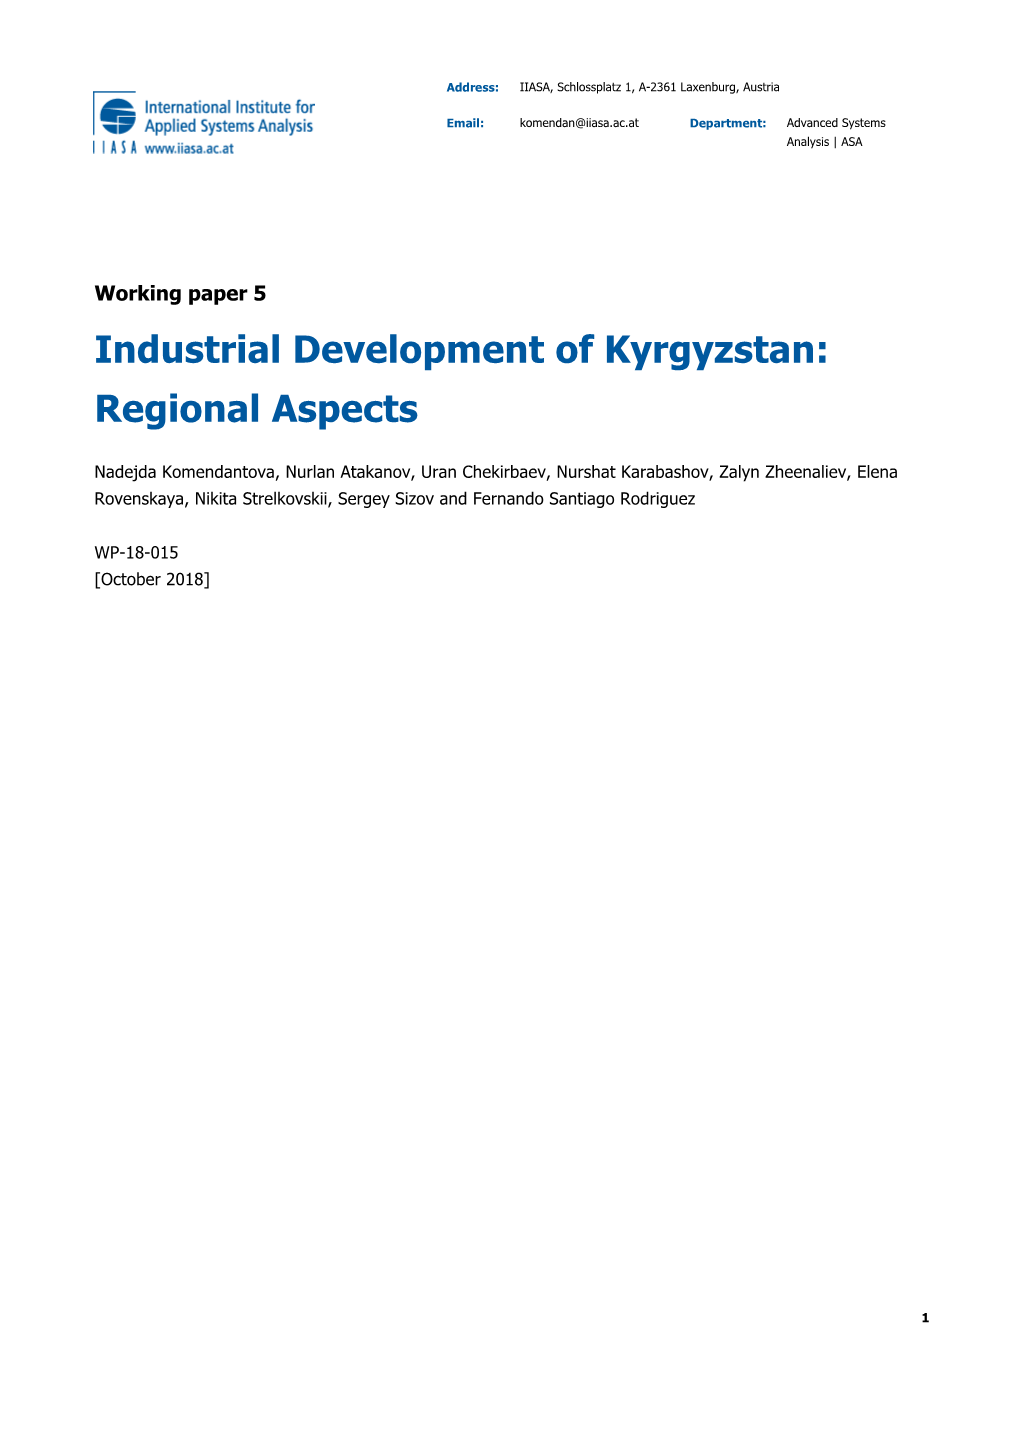 Industrial Development of Kyrgyzstan: Regional Aspects